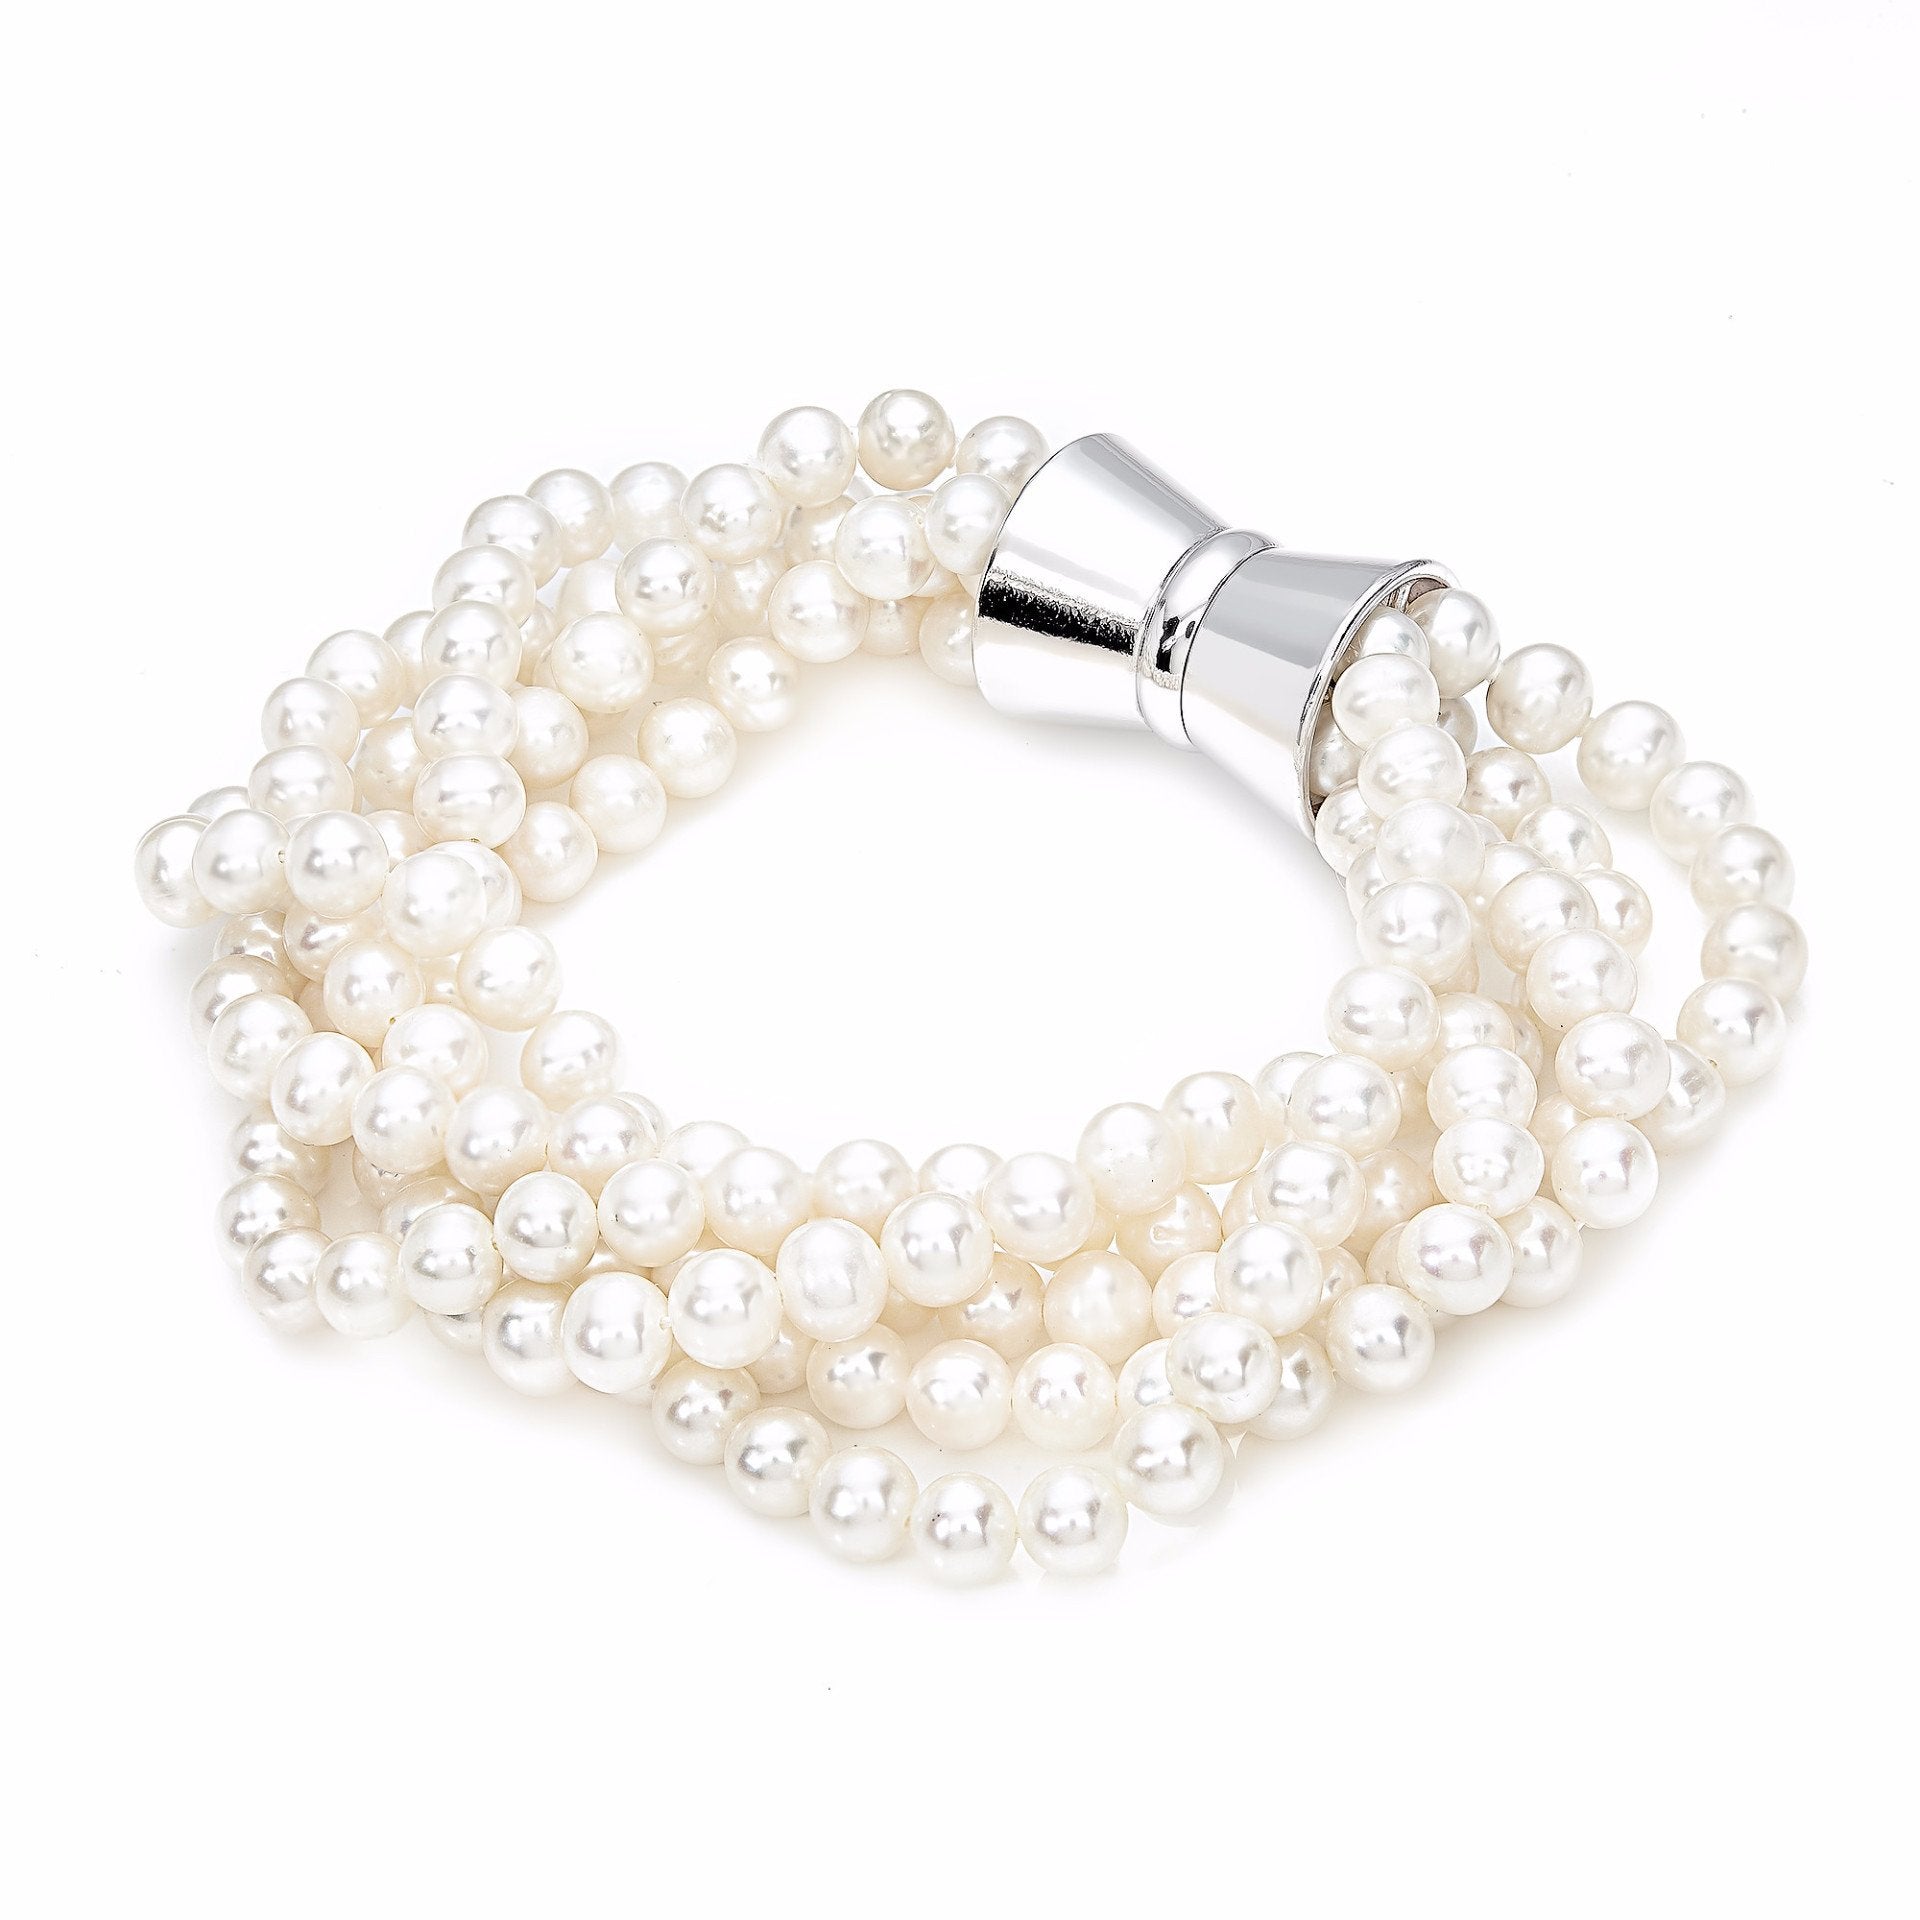 Multirow Magnetic Bracelet White Pearls